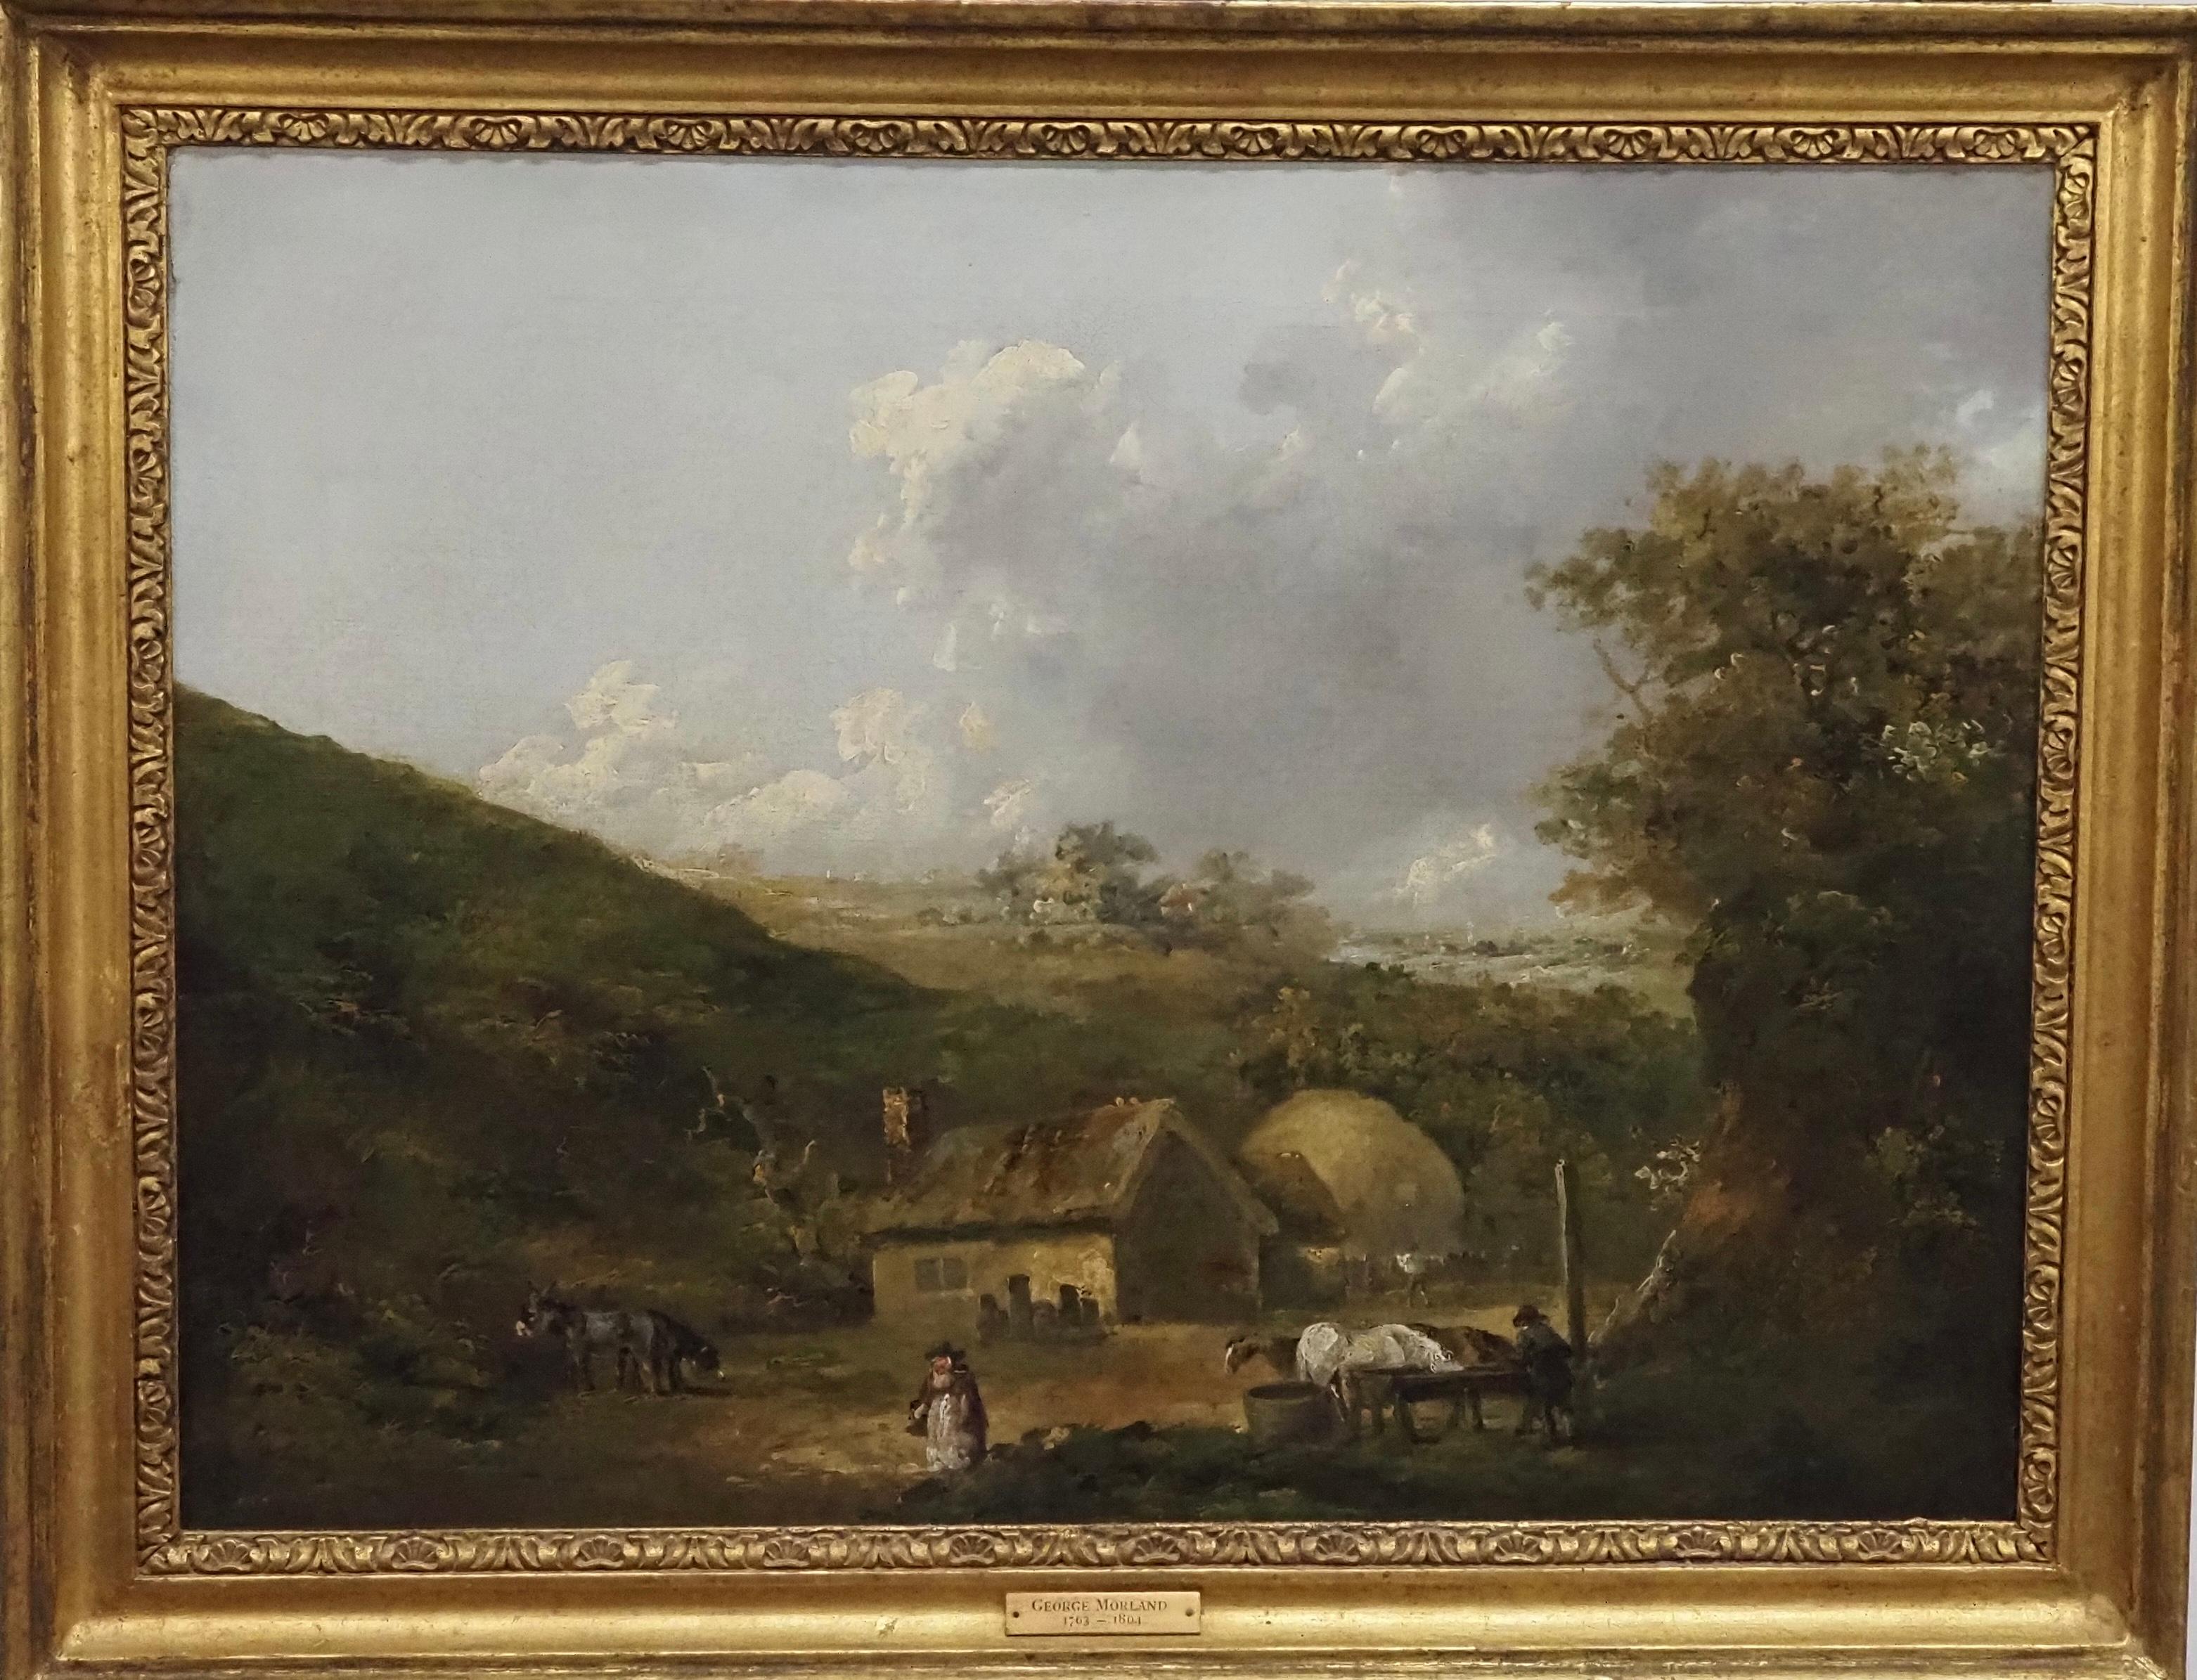 Landscape Painting George Morland - Une ferme dans un paysage